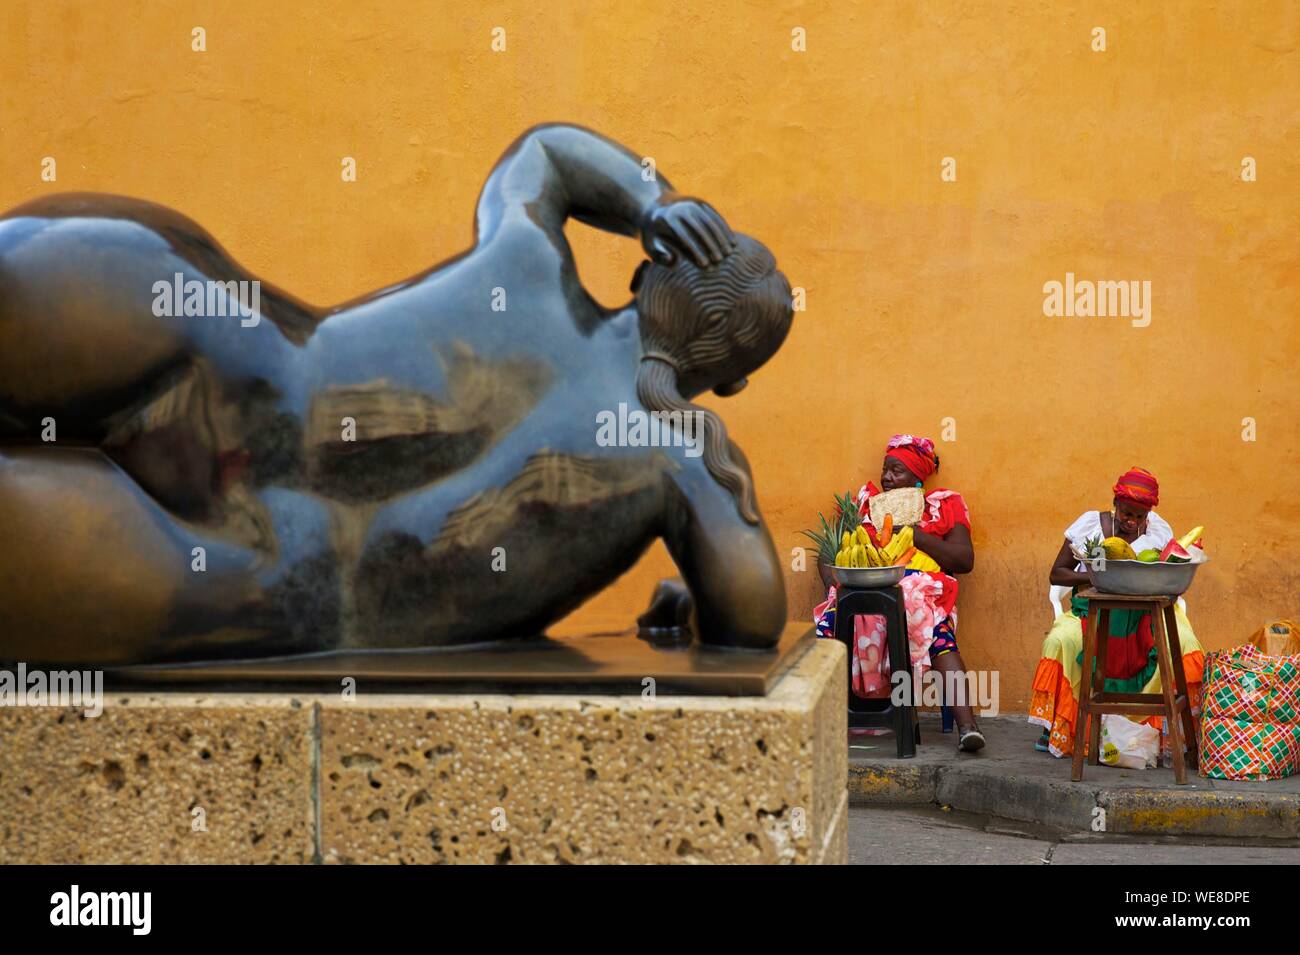 Kolumbien, Bolivar Abteilung, Cartagena, als Weltkulturerbe von der UNESCO, Santo Domingo aufgeführt, Obst Verkäufer vor einem Botero Skulptur Stockfoto